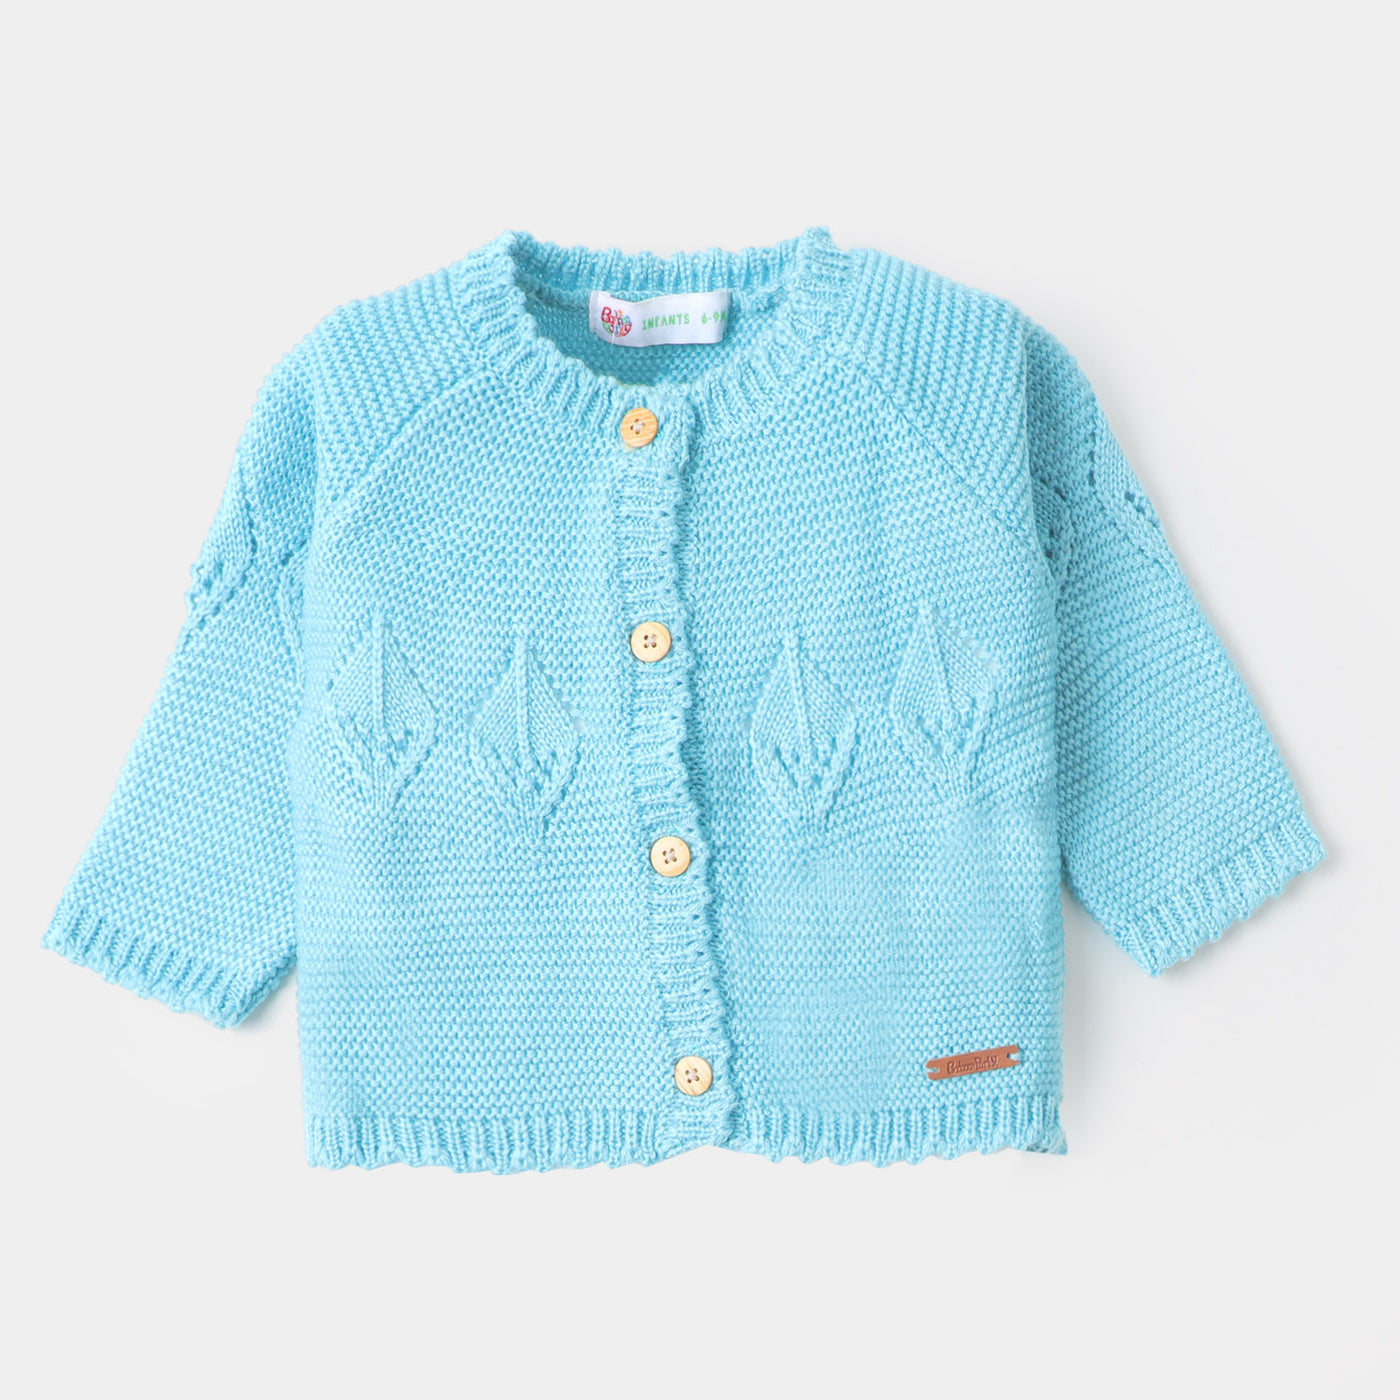 Infant Girls Sweater BP38-22 - Light Blue